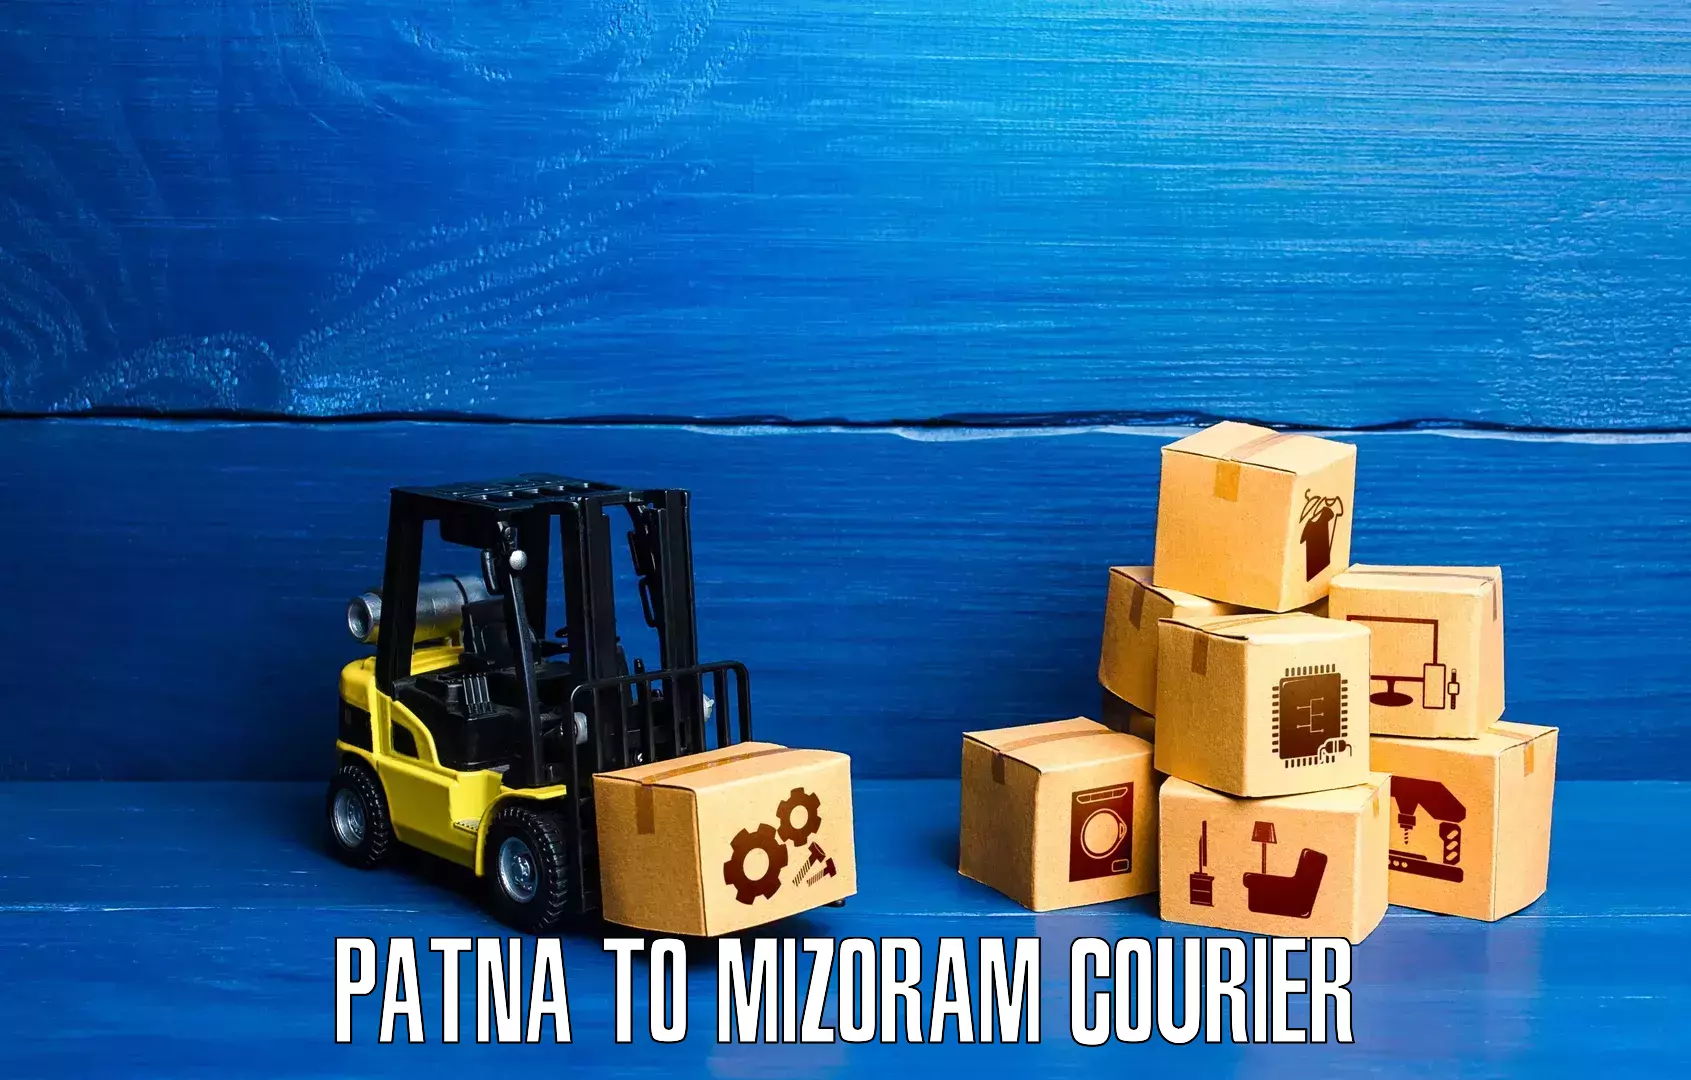 Courier service innovation Patna to Mizoram